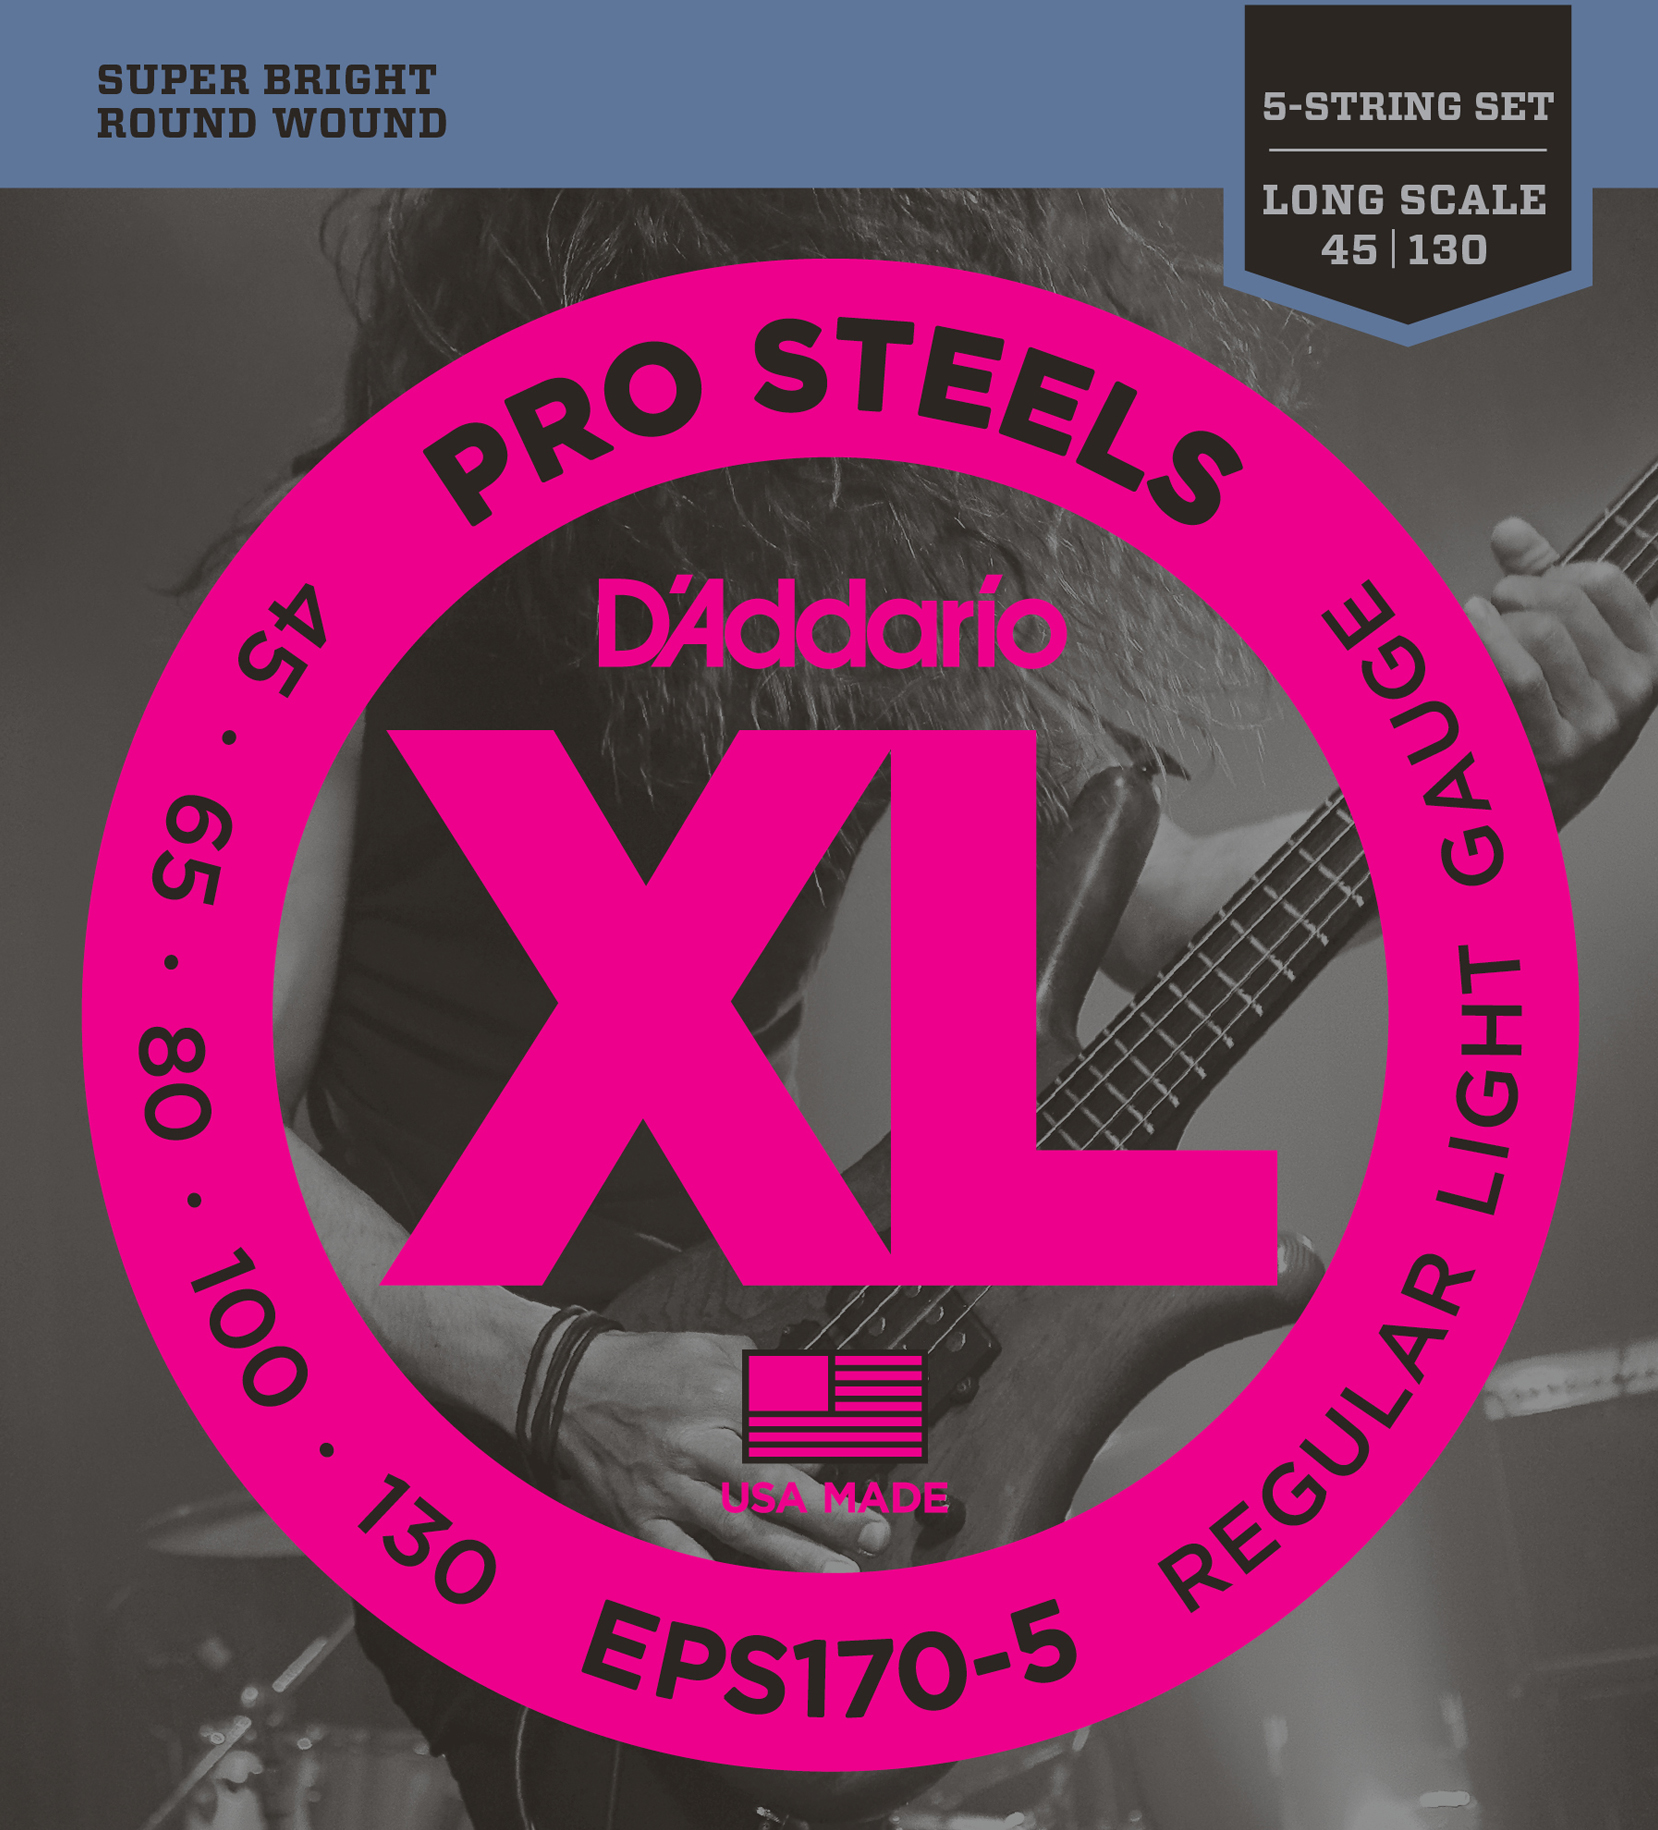 EPS170-5 Pro Steels 5-String 45-130